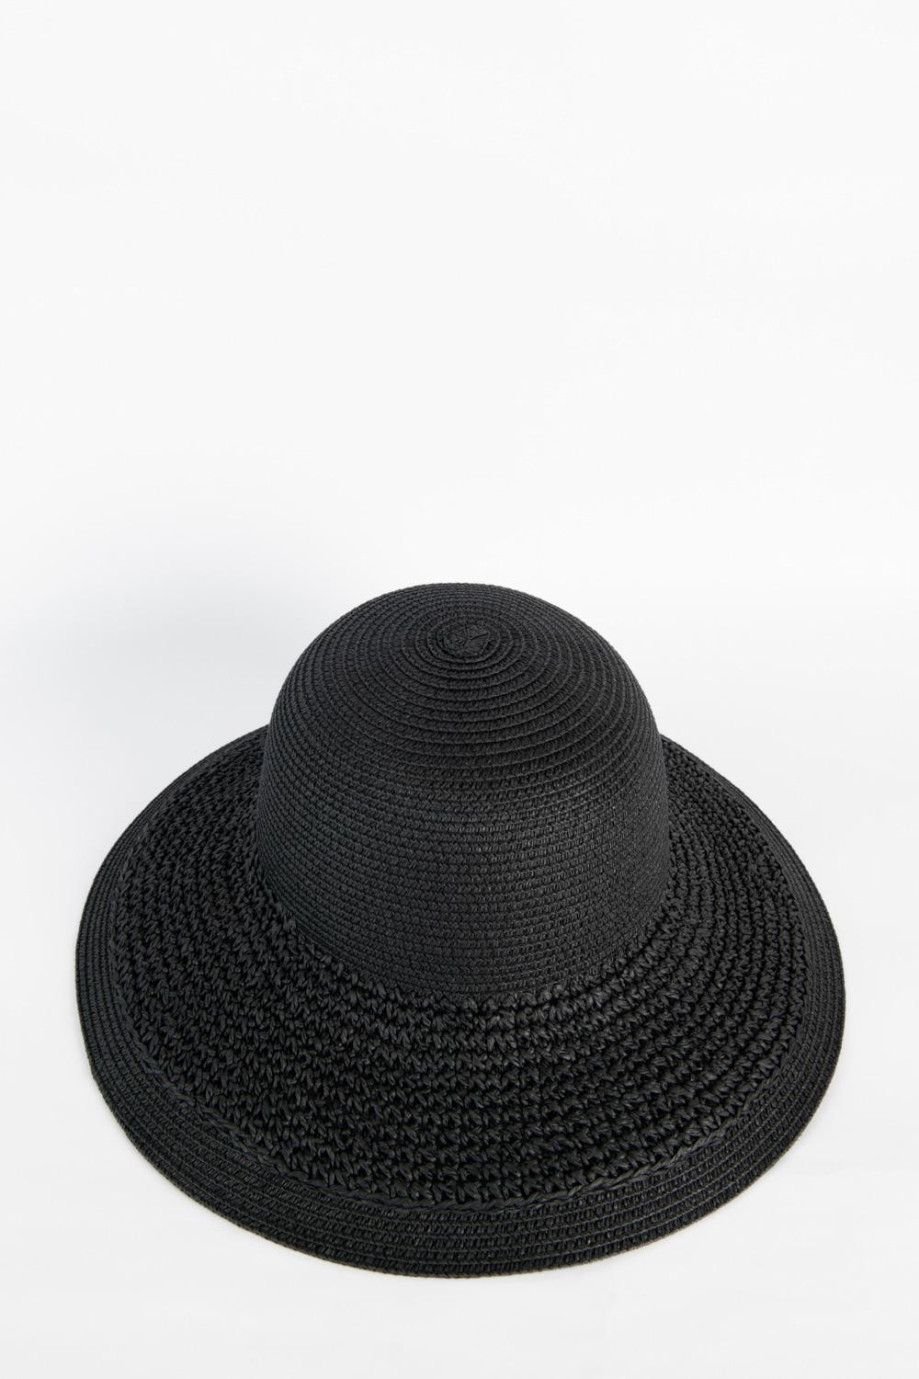 Sombrero de paja negro con ala ancha y franja decorativa